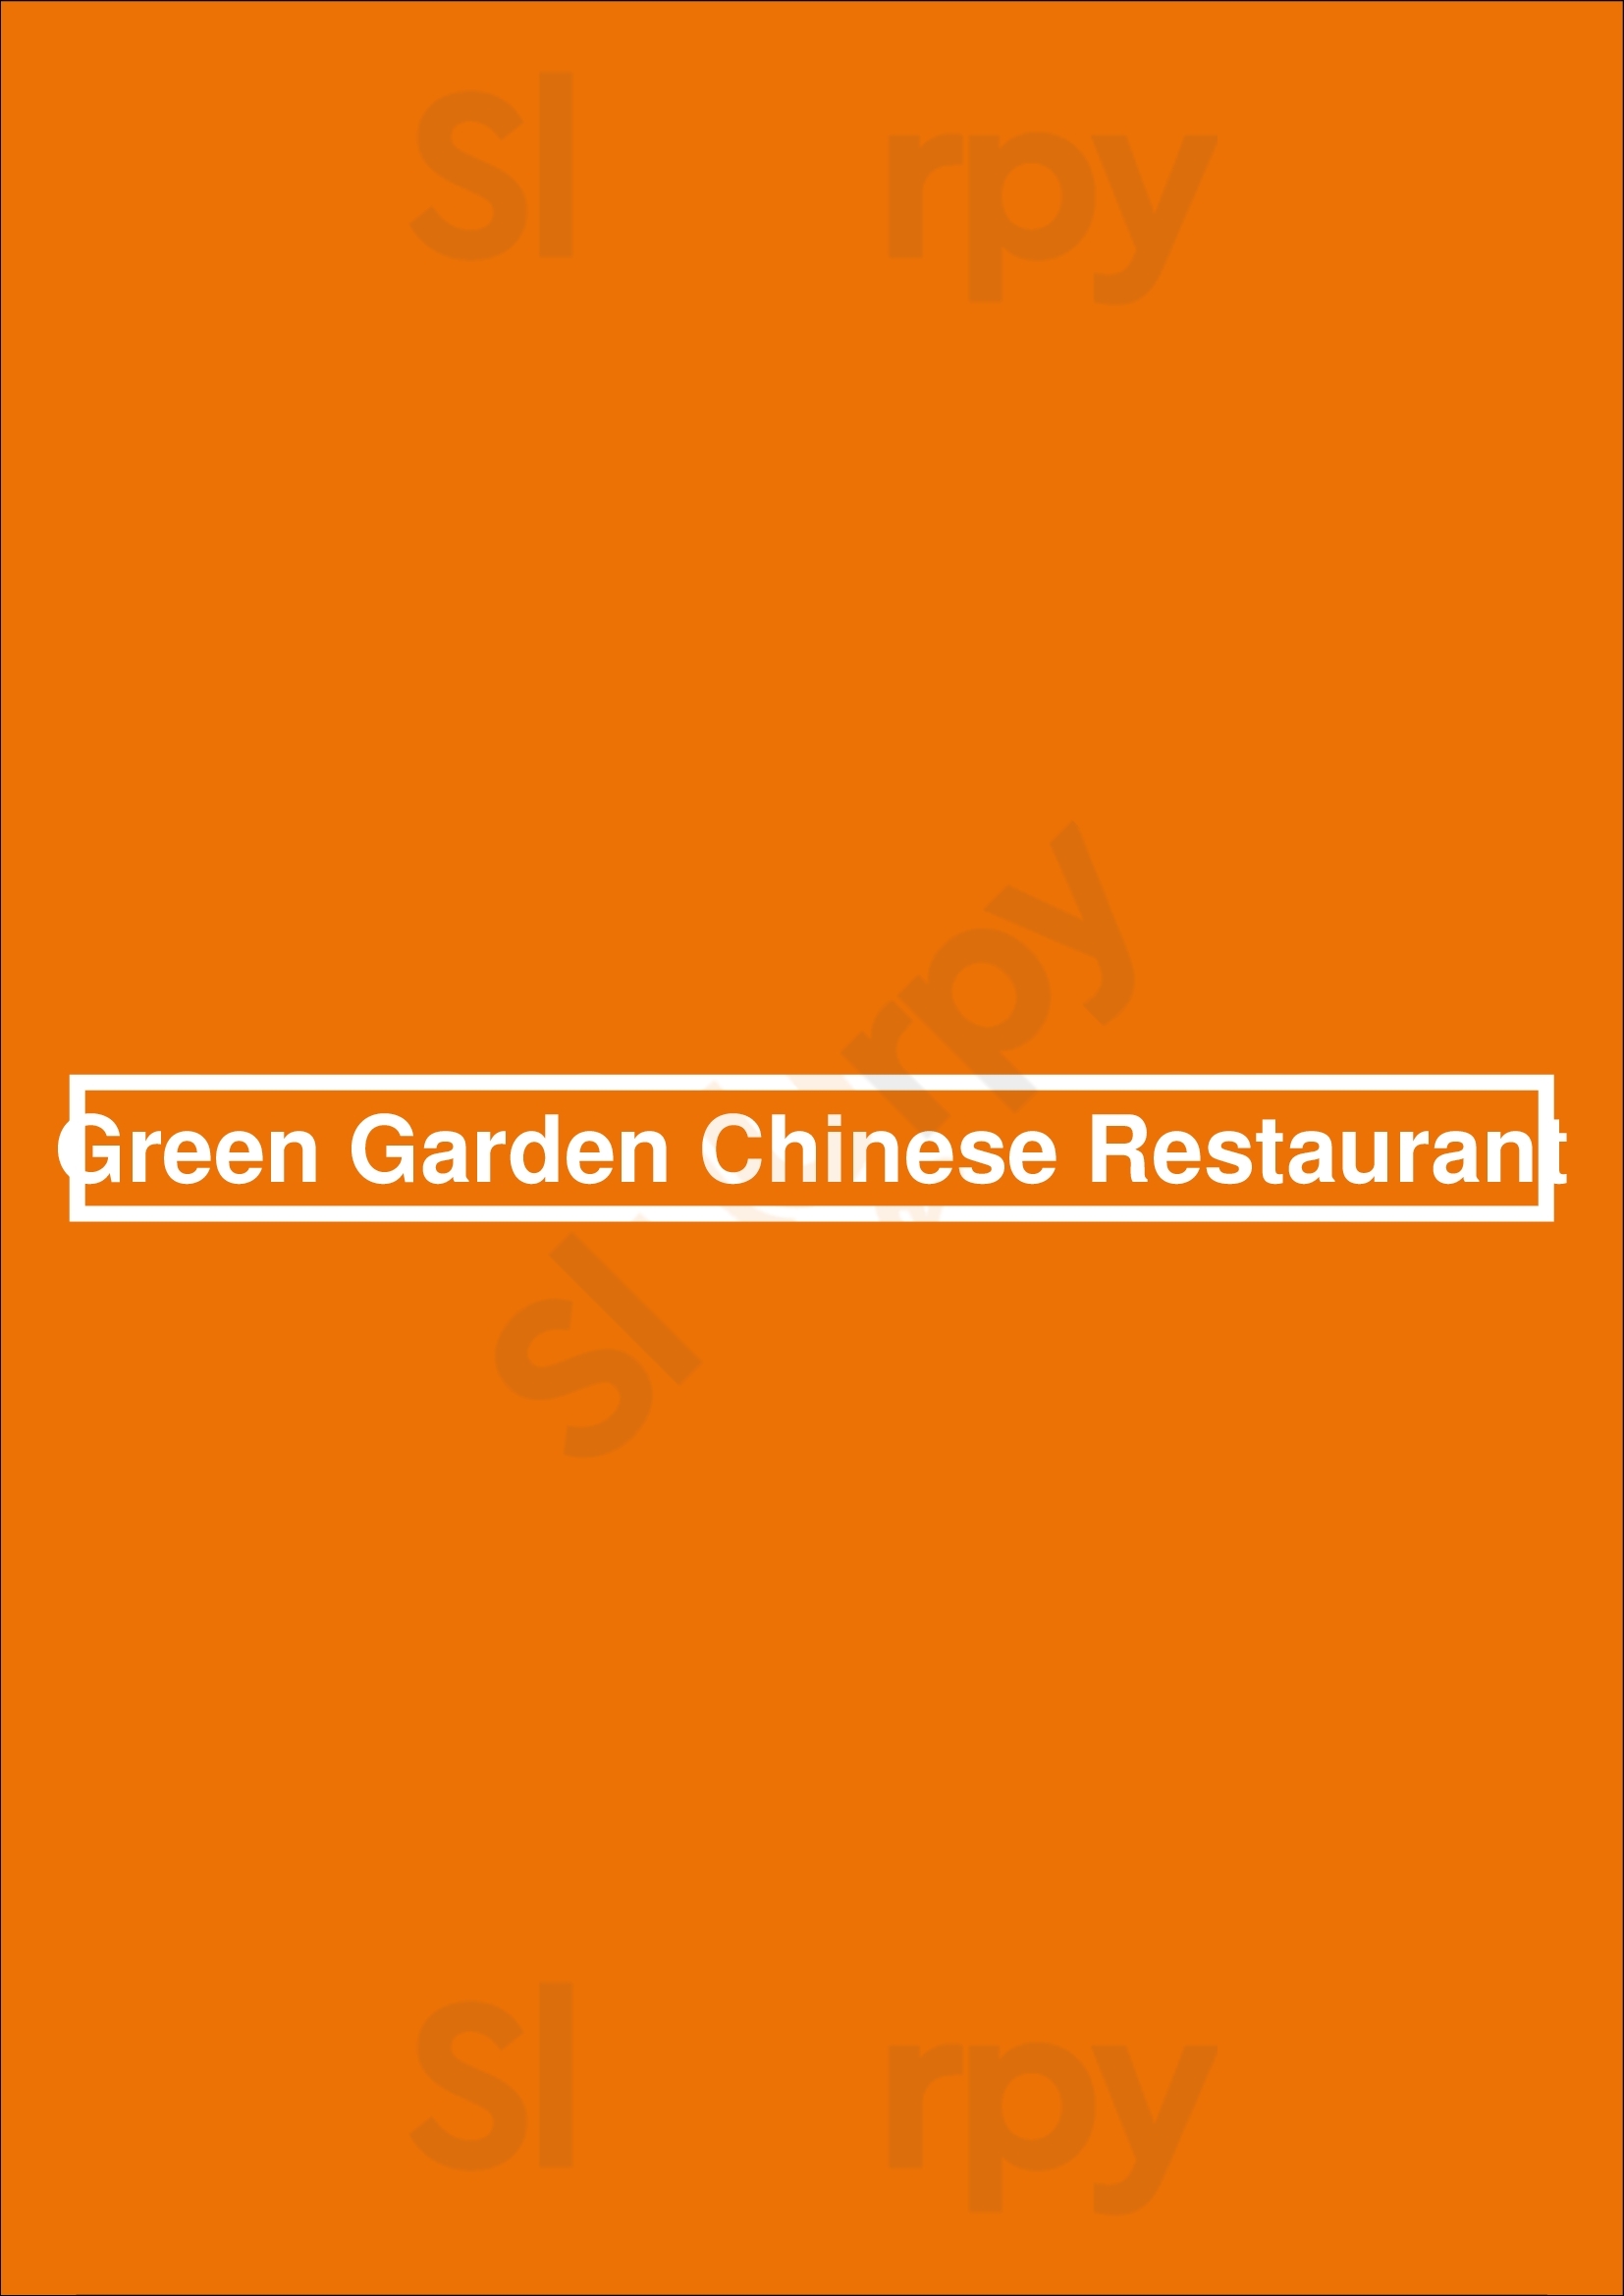 Green Garden Chinese Restaurant Houston Menu - 1